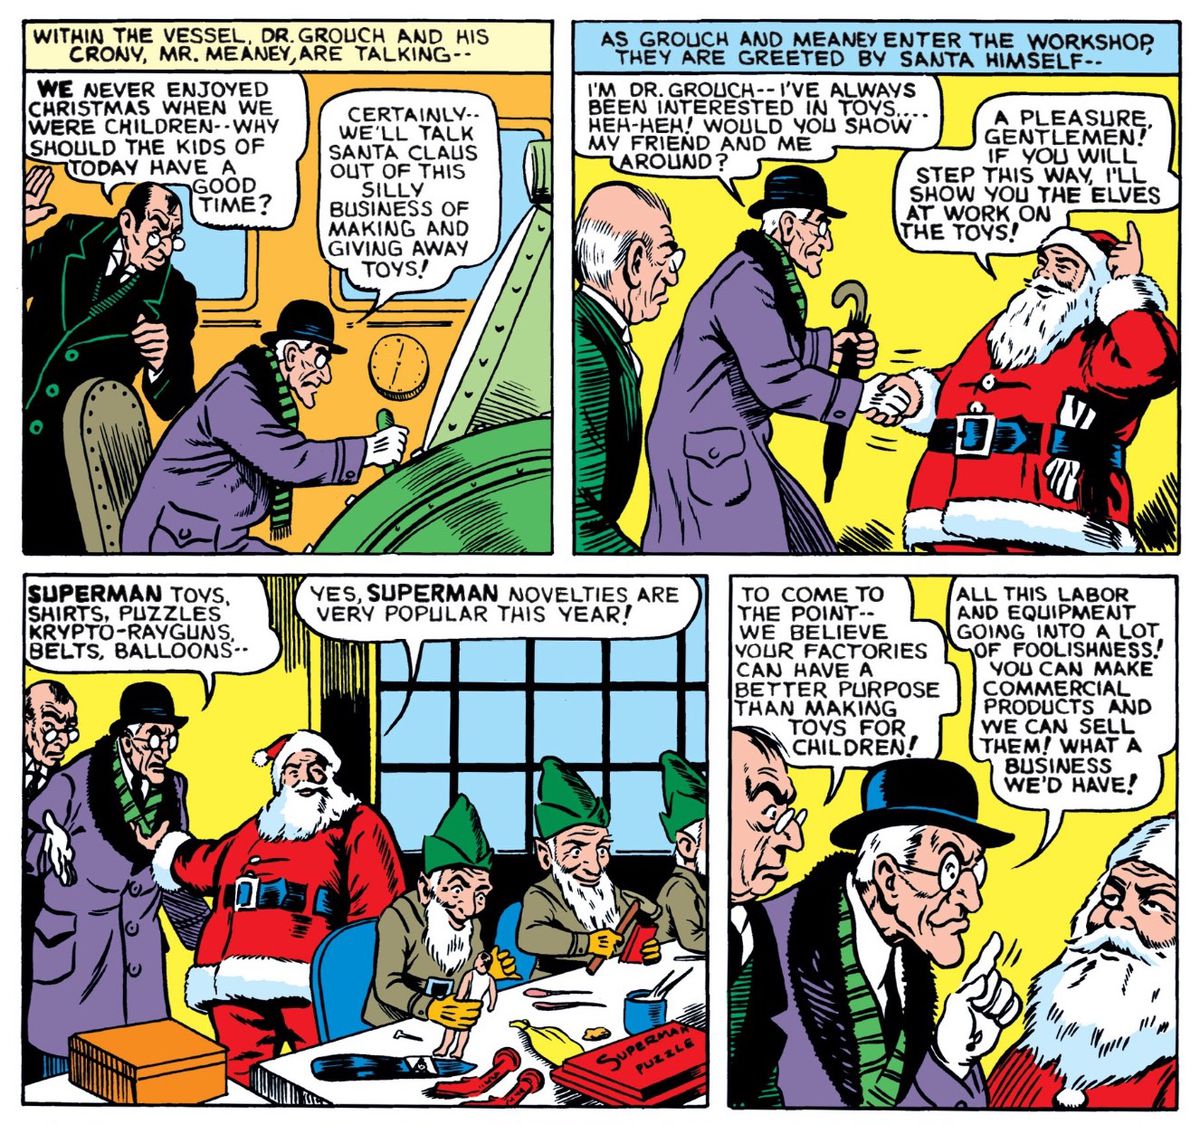 Dr Grouch och Mr. Meaney försöker prata jultomten om att göra leksaker till förmån för mer lukrativa föremål, i Supermans juläventyr, DC Comics (1940)